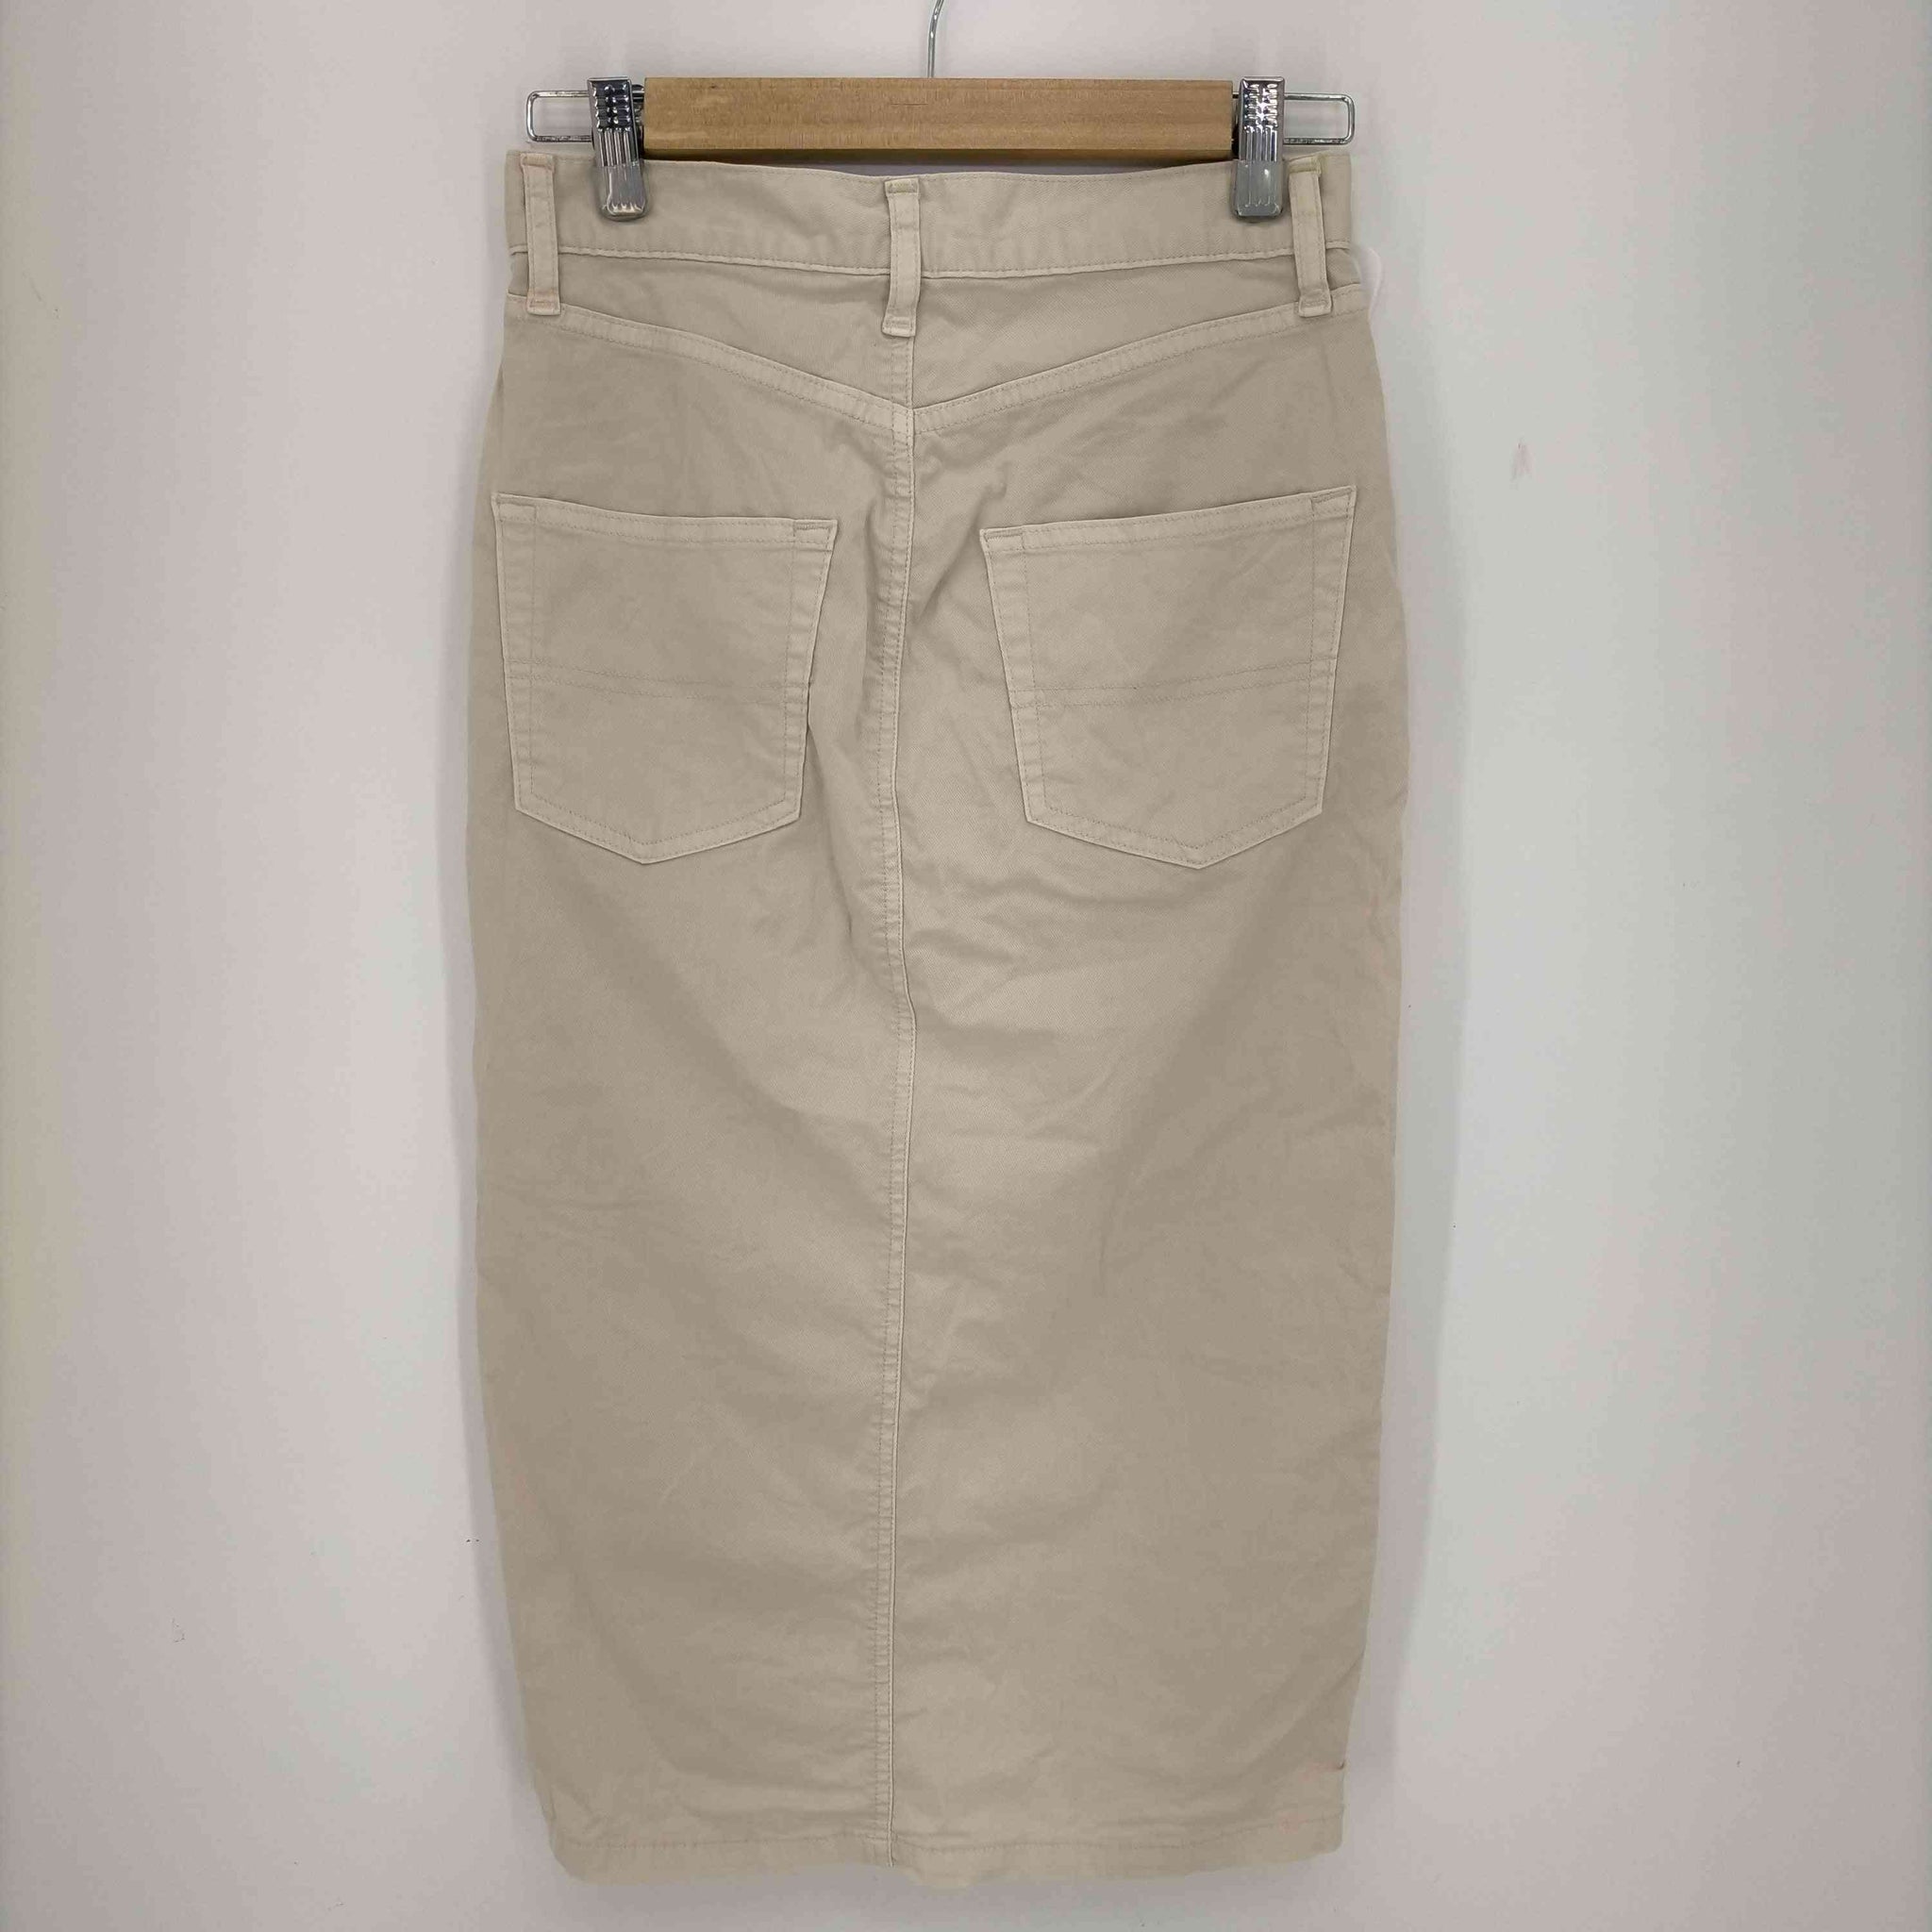 DEUXIEME CLASSE(ドゥーズィエムクラス)subtle shades スカート